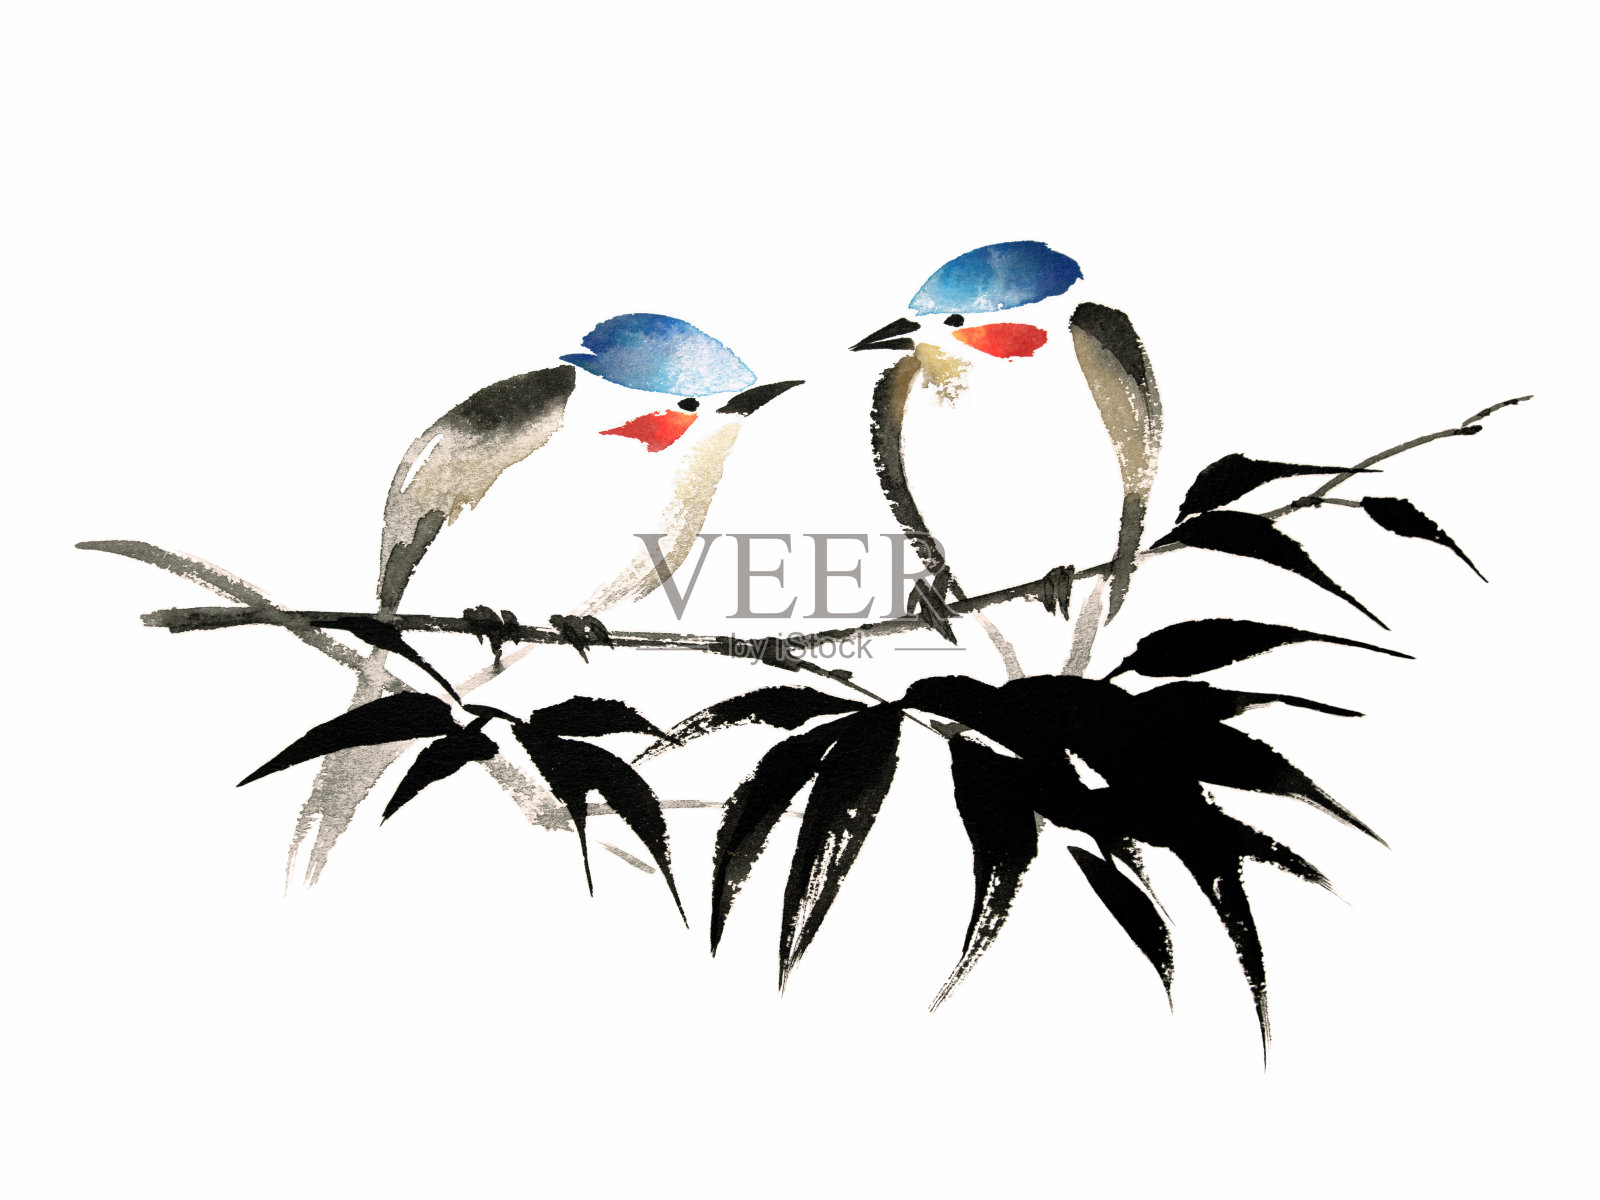 竹上两只鸟的水墨插图。烟灰墨的风格。插画图片素材